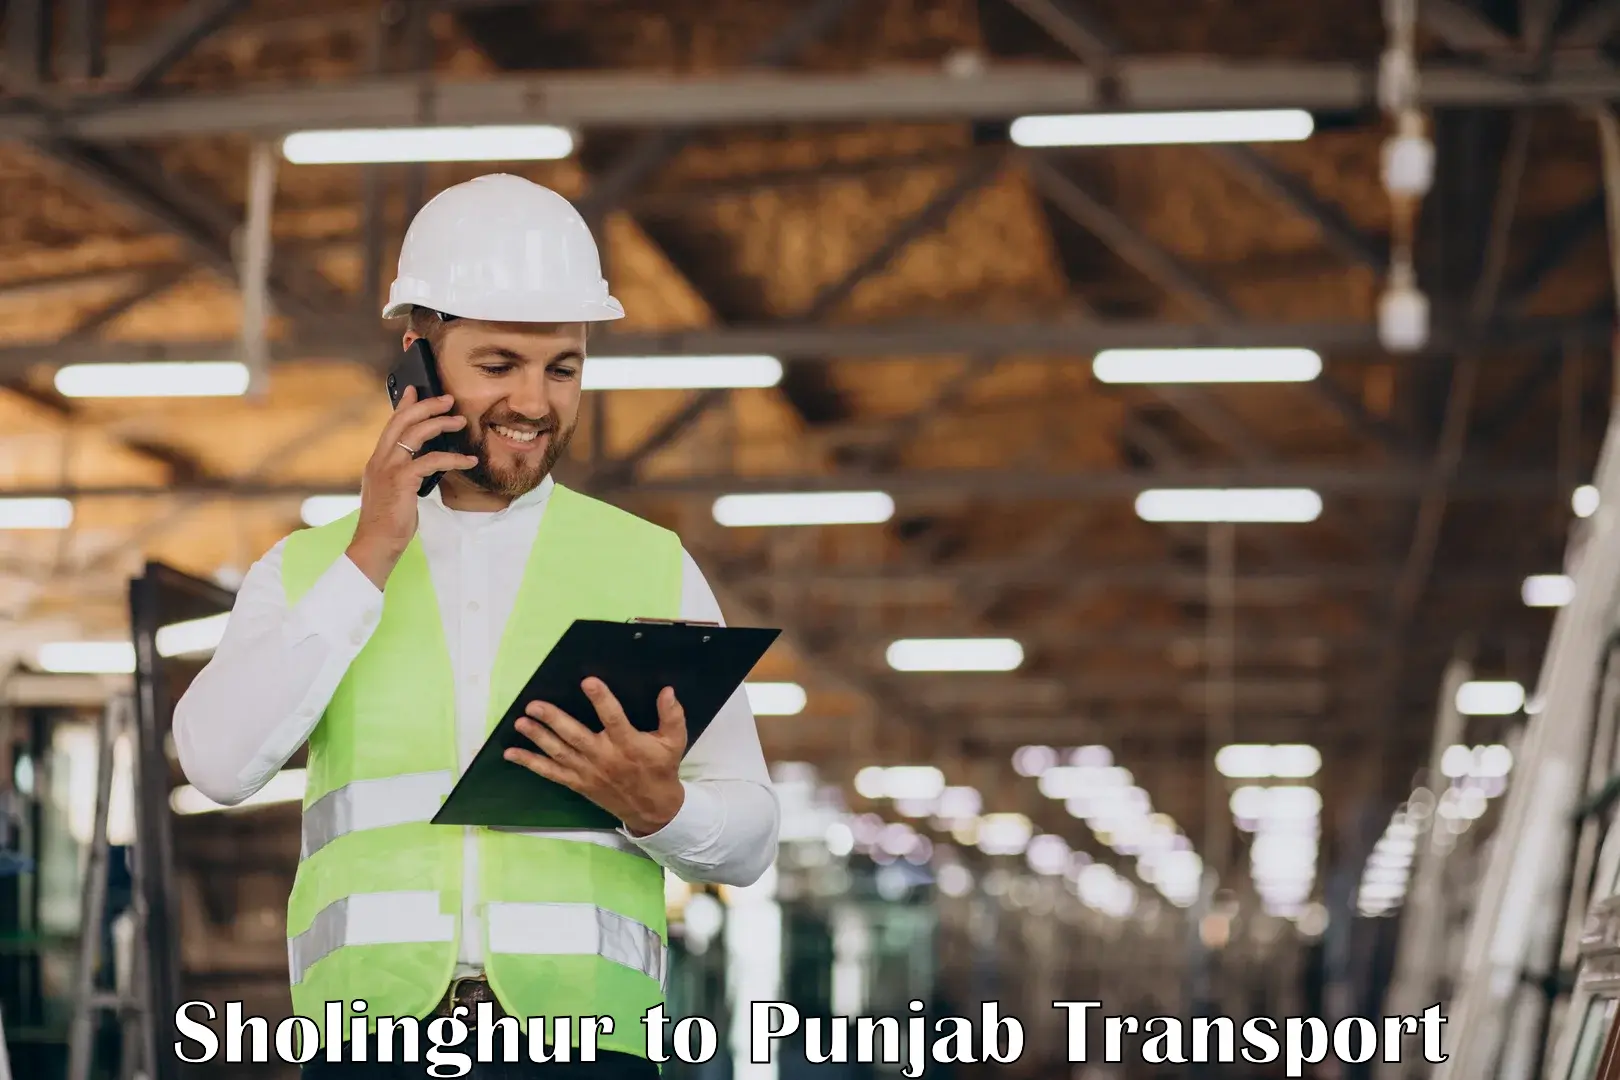 Transport services Sholinghur to Punjab